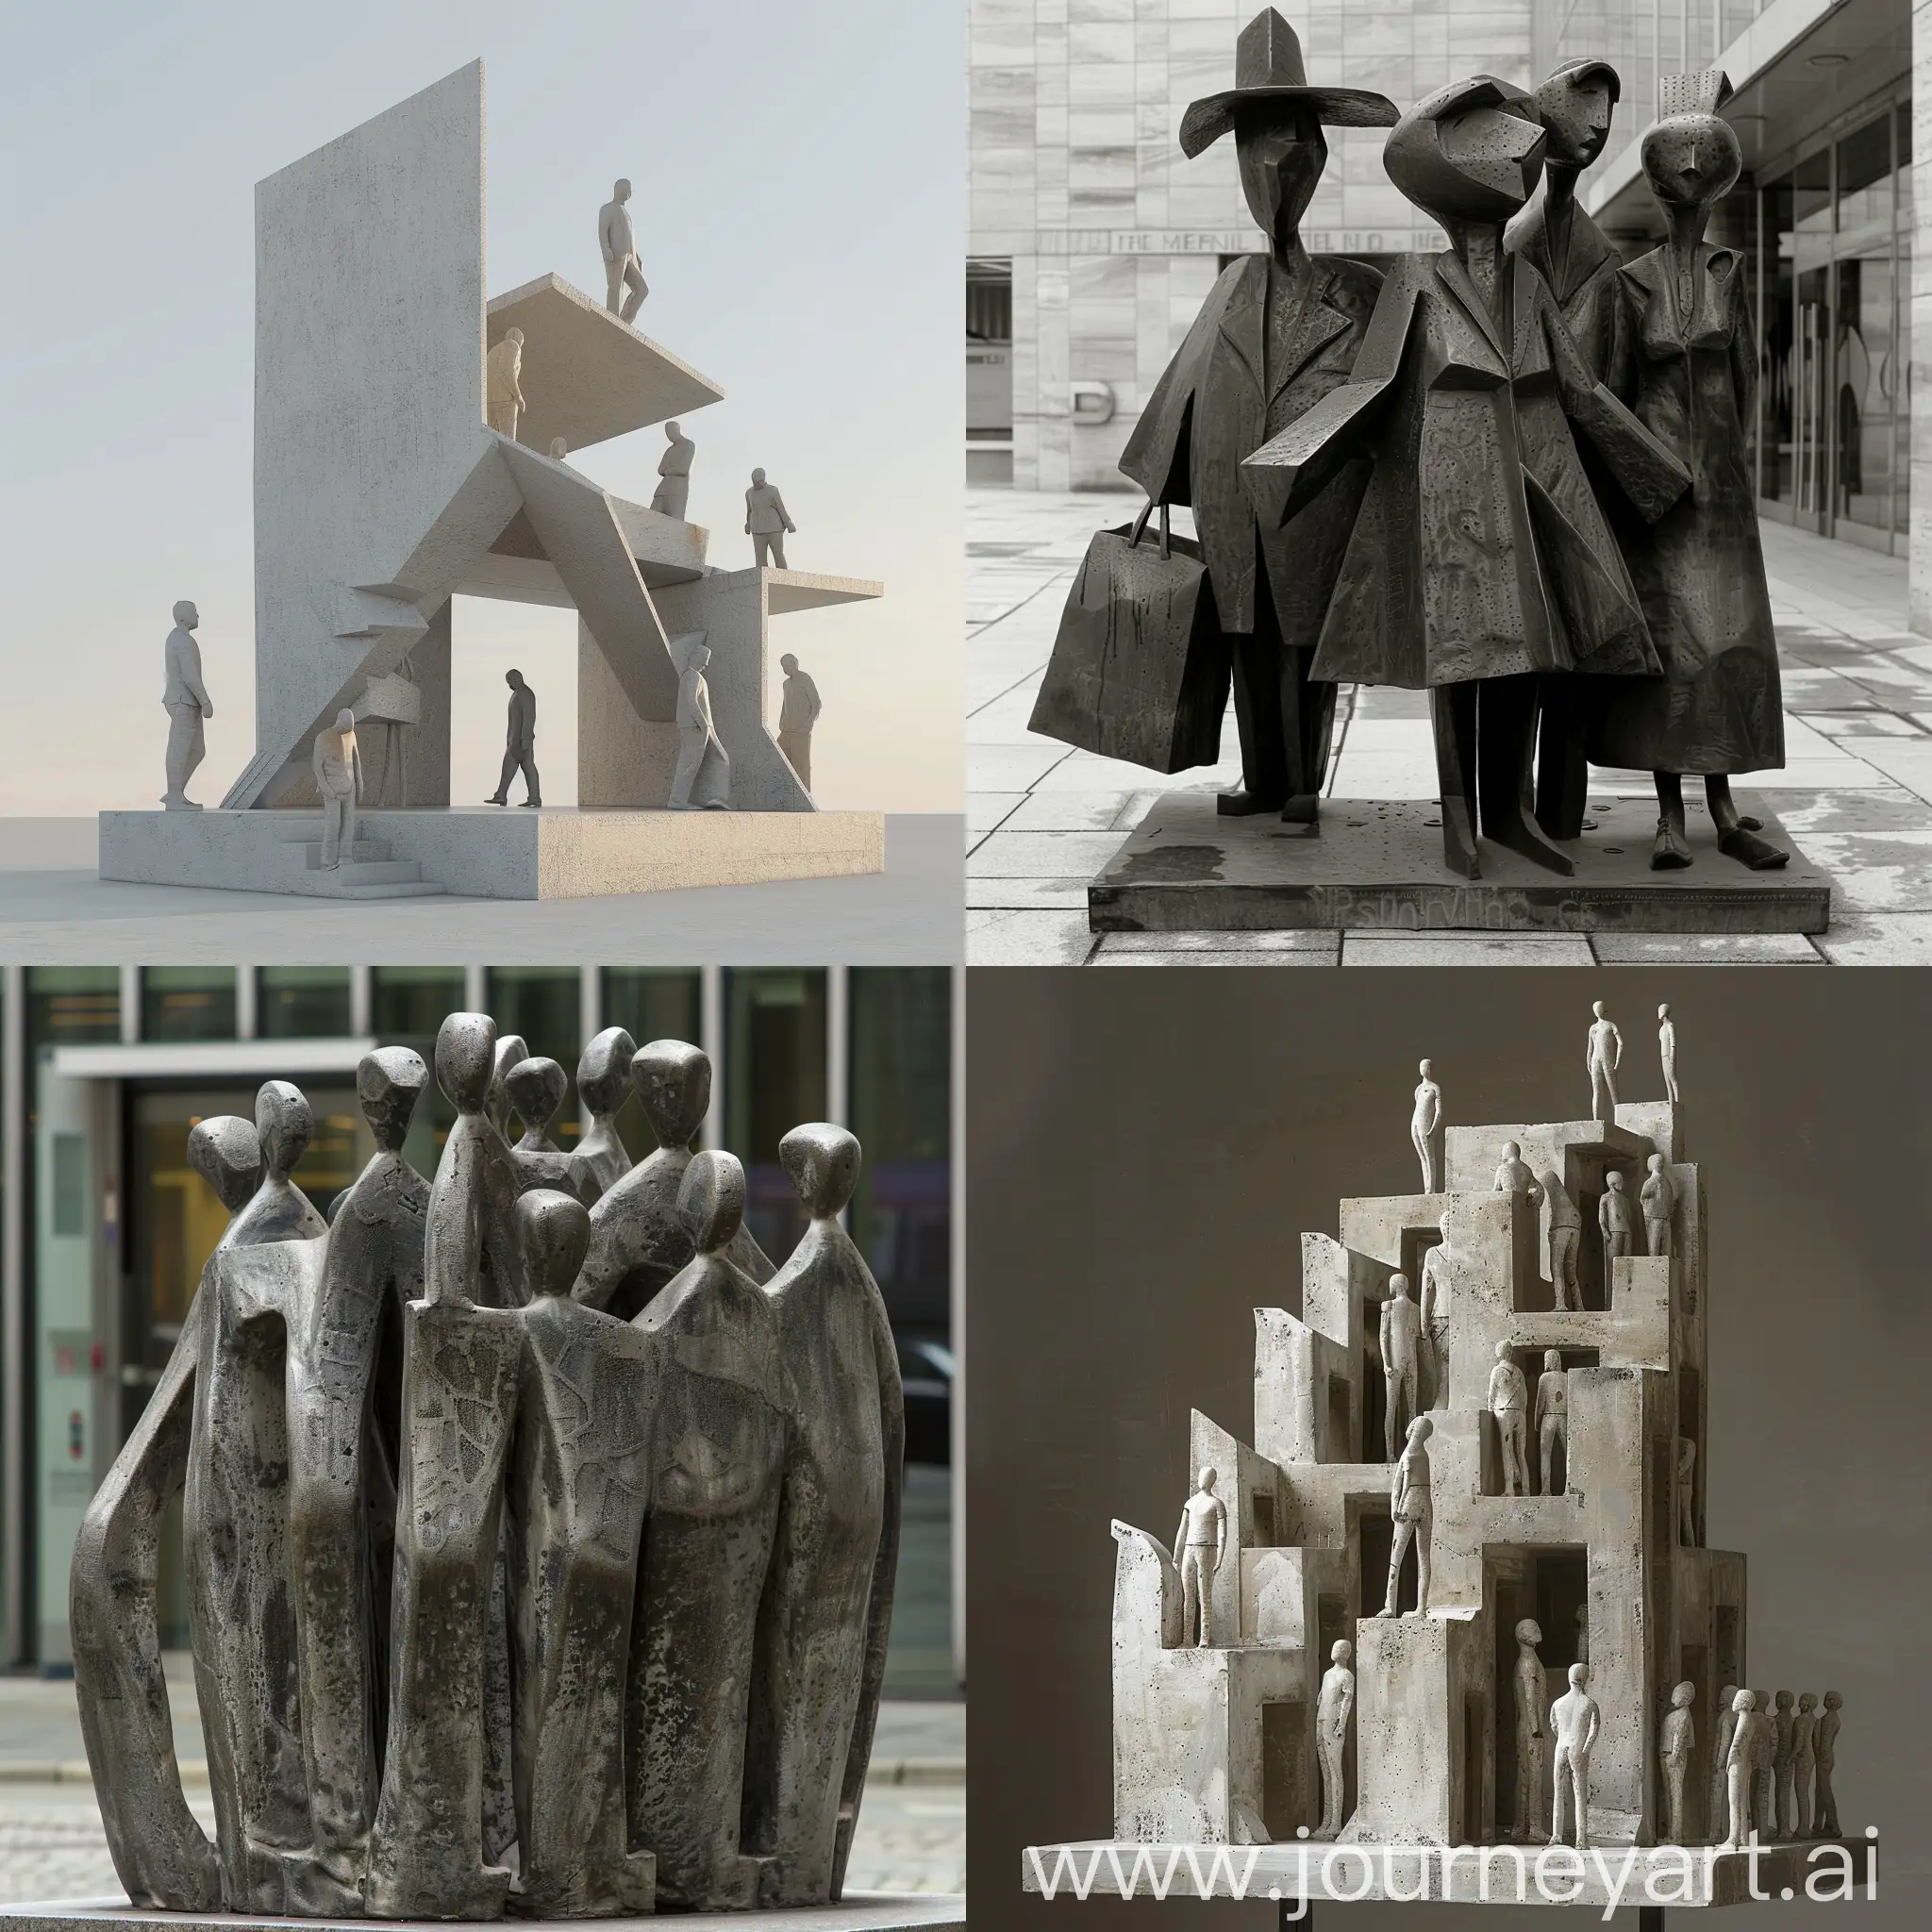 Una escultura urbana, con temática de mercado de referencia, que sean pocas figuras la que conforma la escultura, y sea de manera minimalista